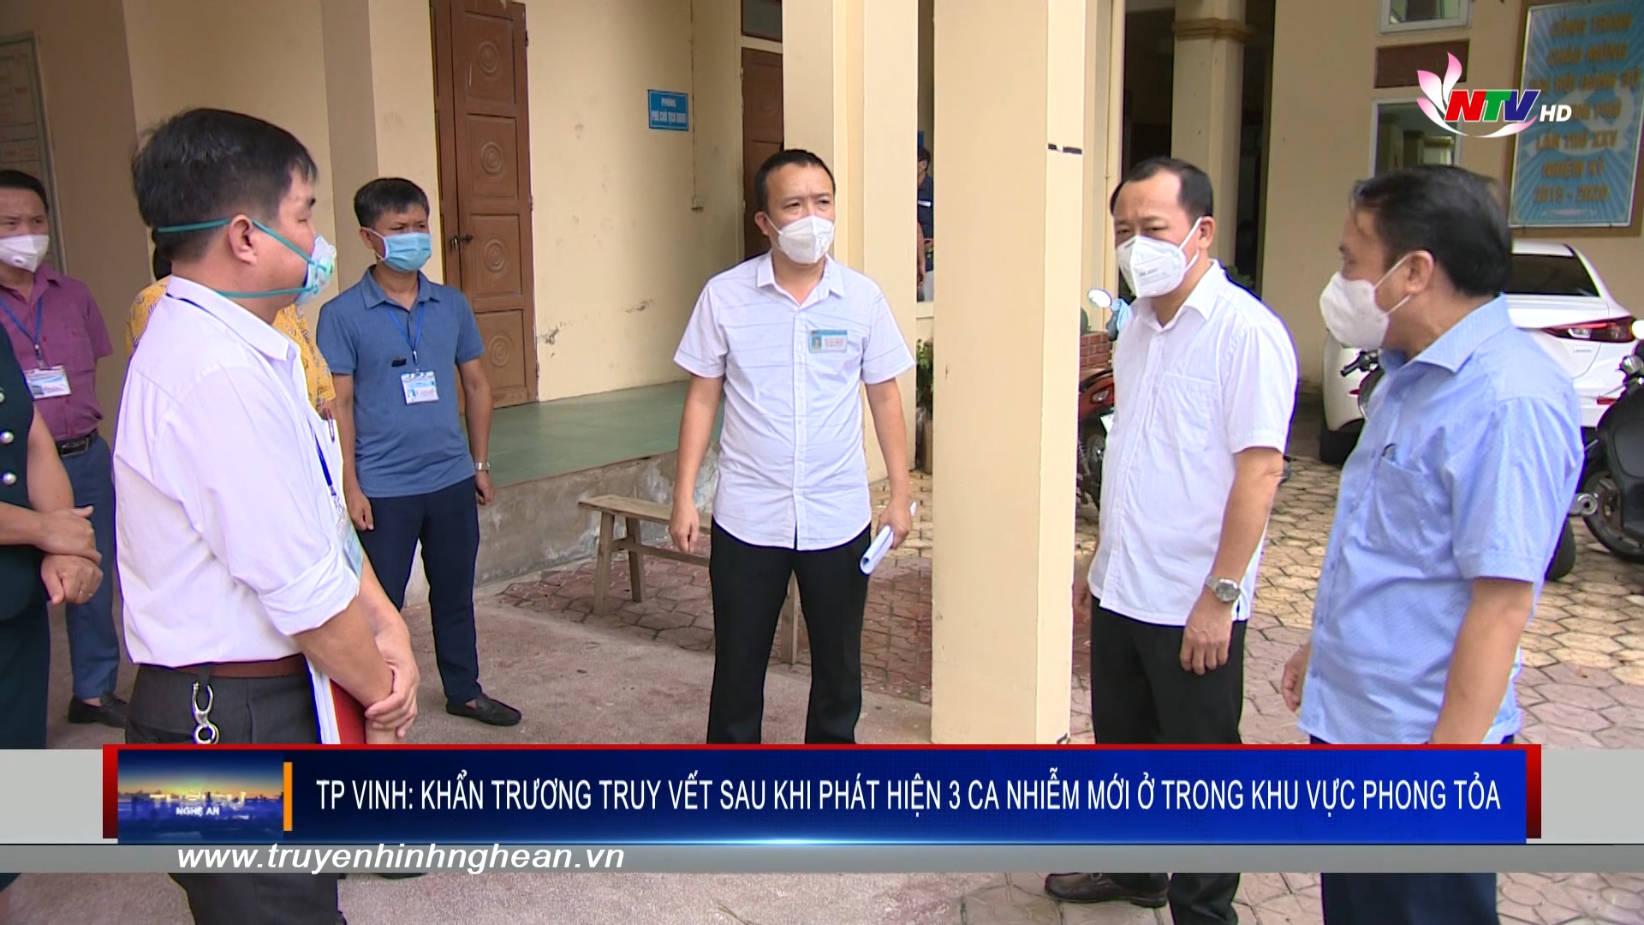 Thành phố Vinh: khẩn trương truy vết sau khi phát hiện 3 ca nhiễm mới ở trong khu vực phong tỏa